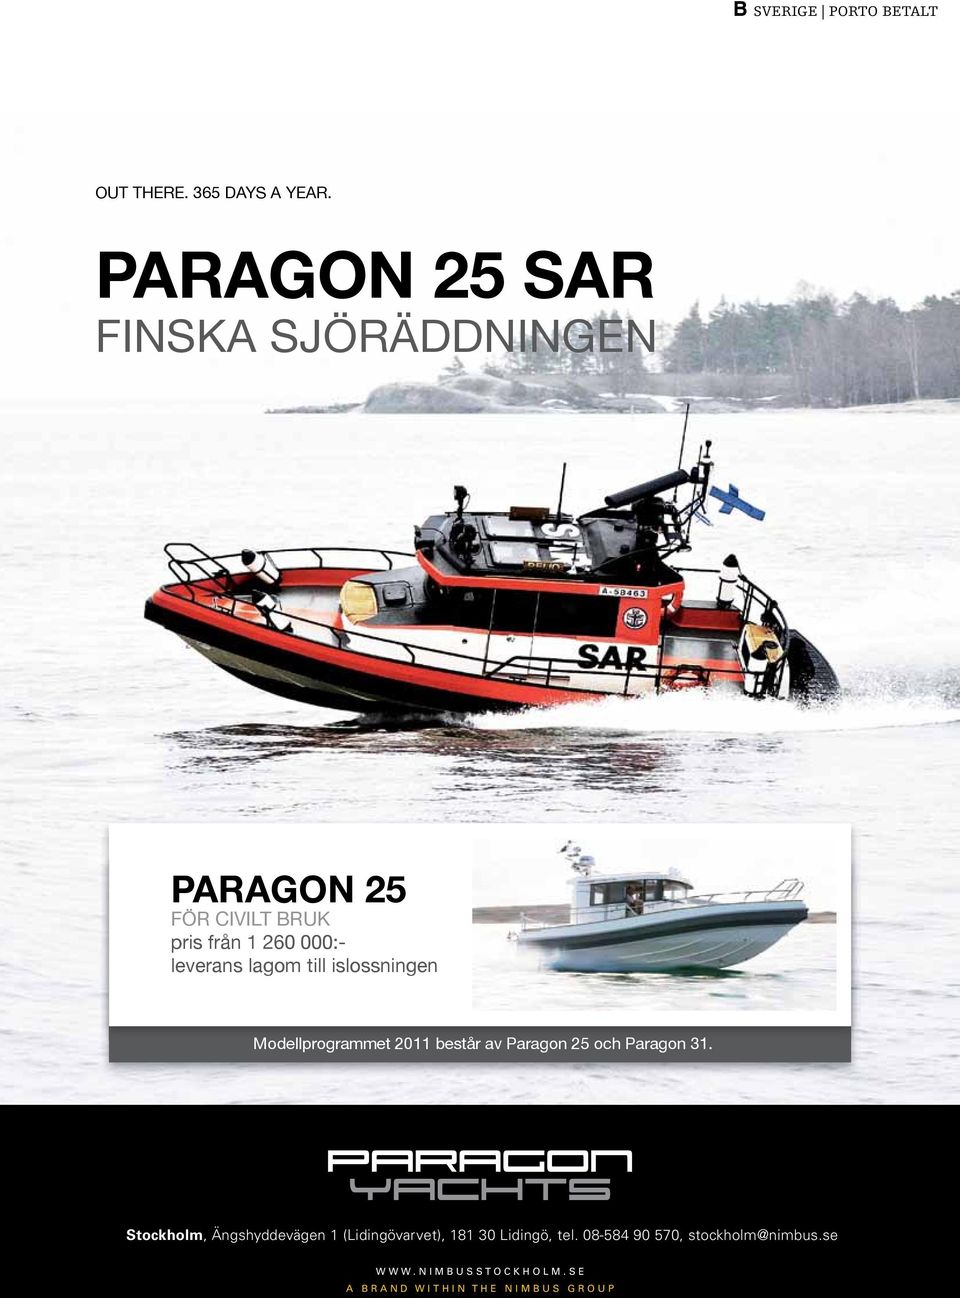 lagom till islossningen Modellprogrammet 2011 består av Paragon 25 och Paragon 31.